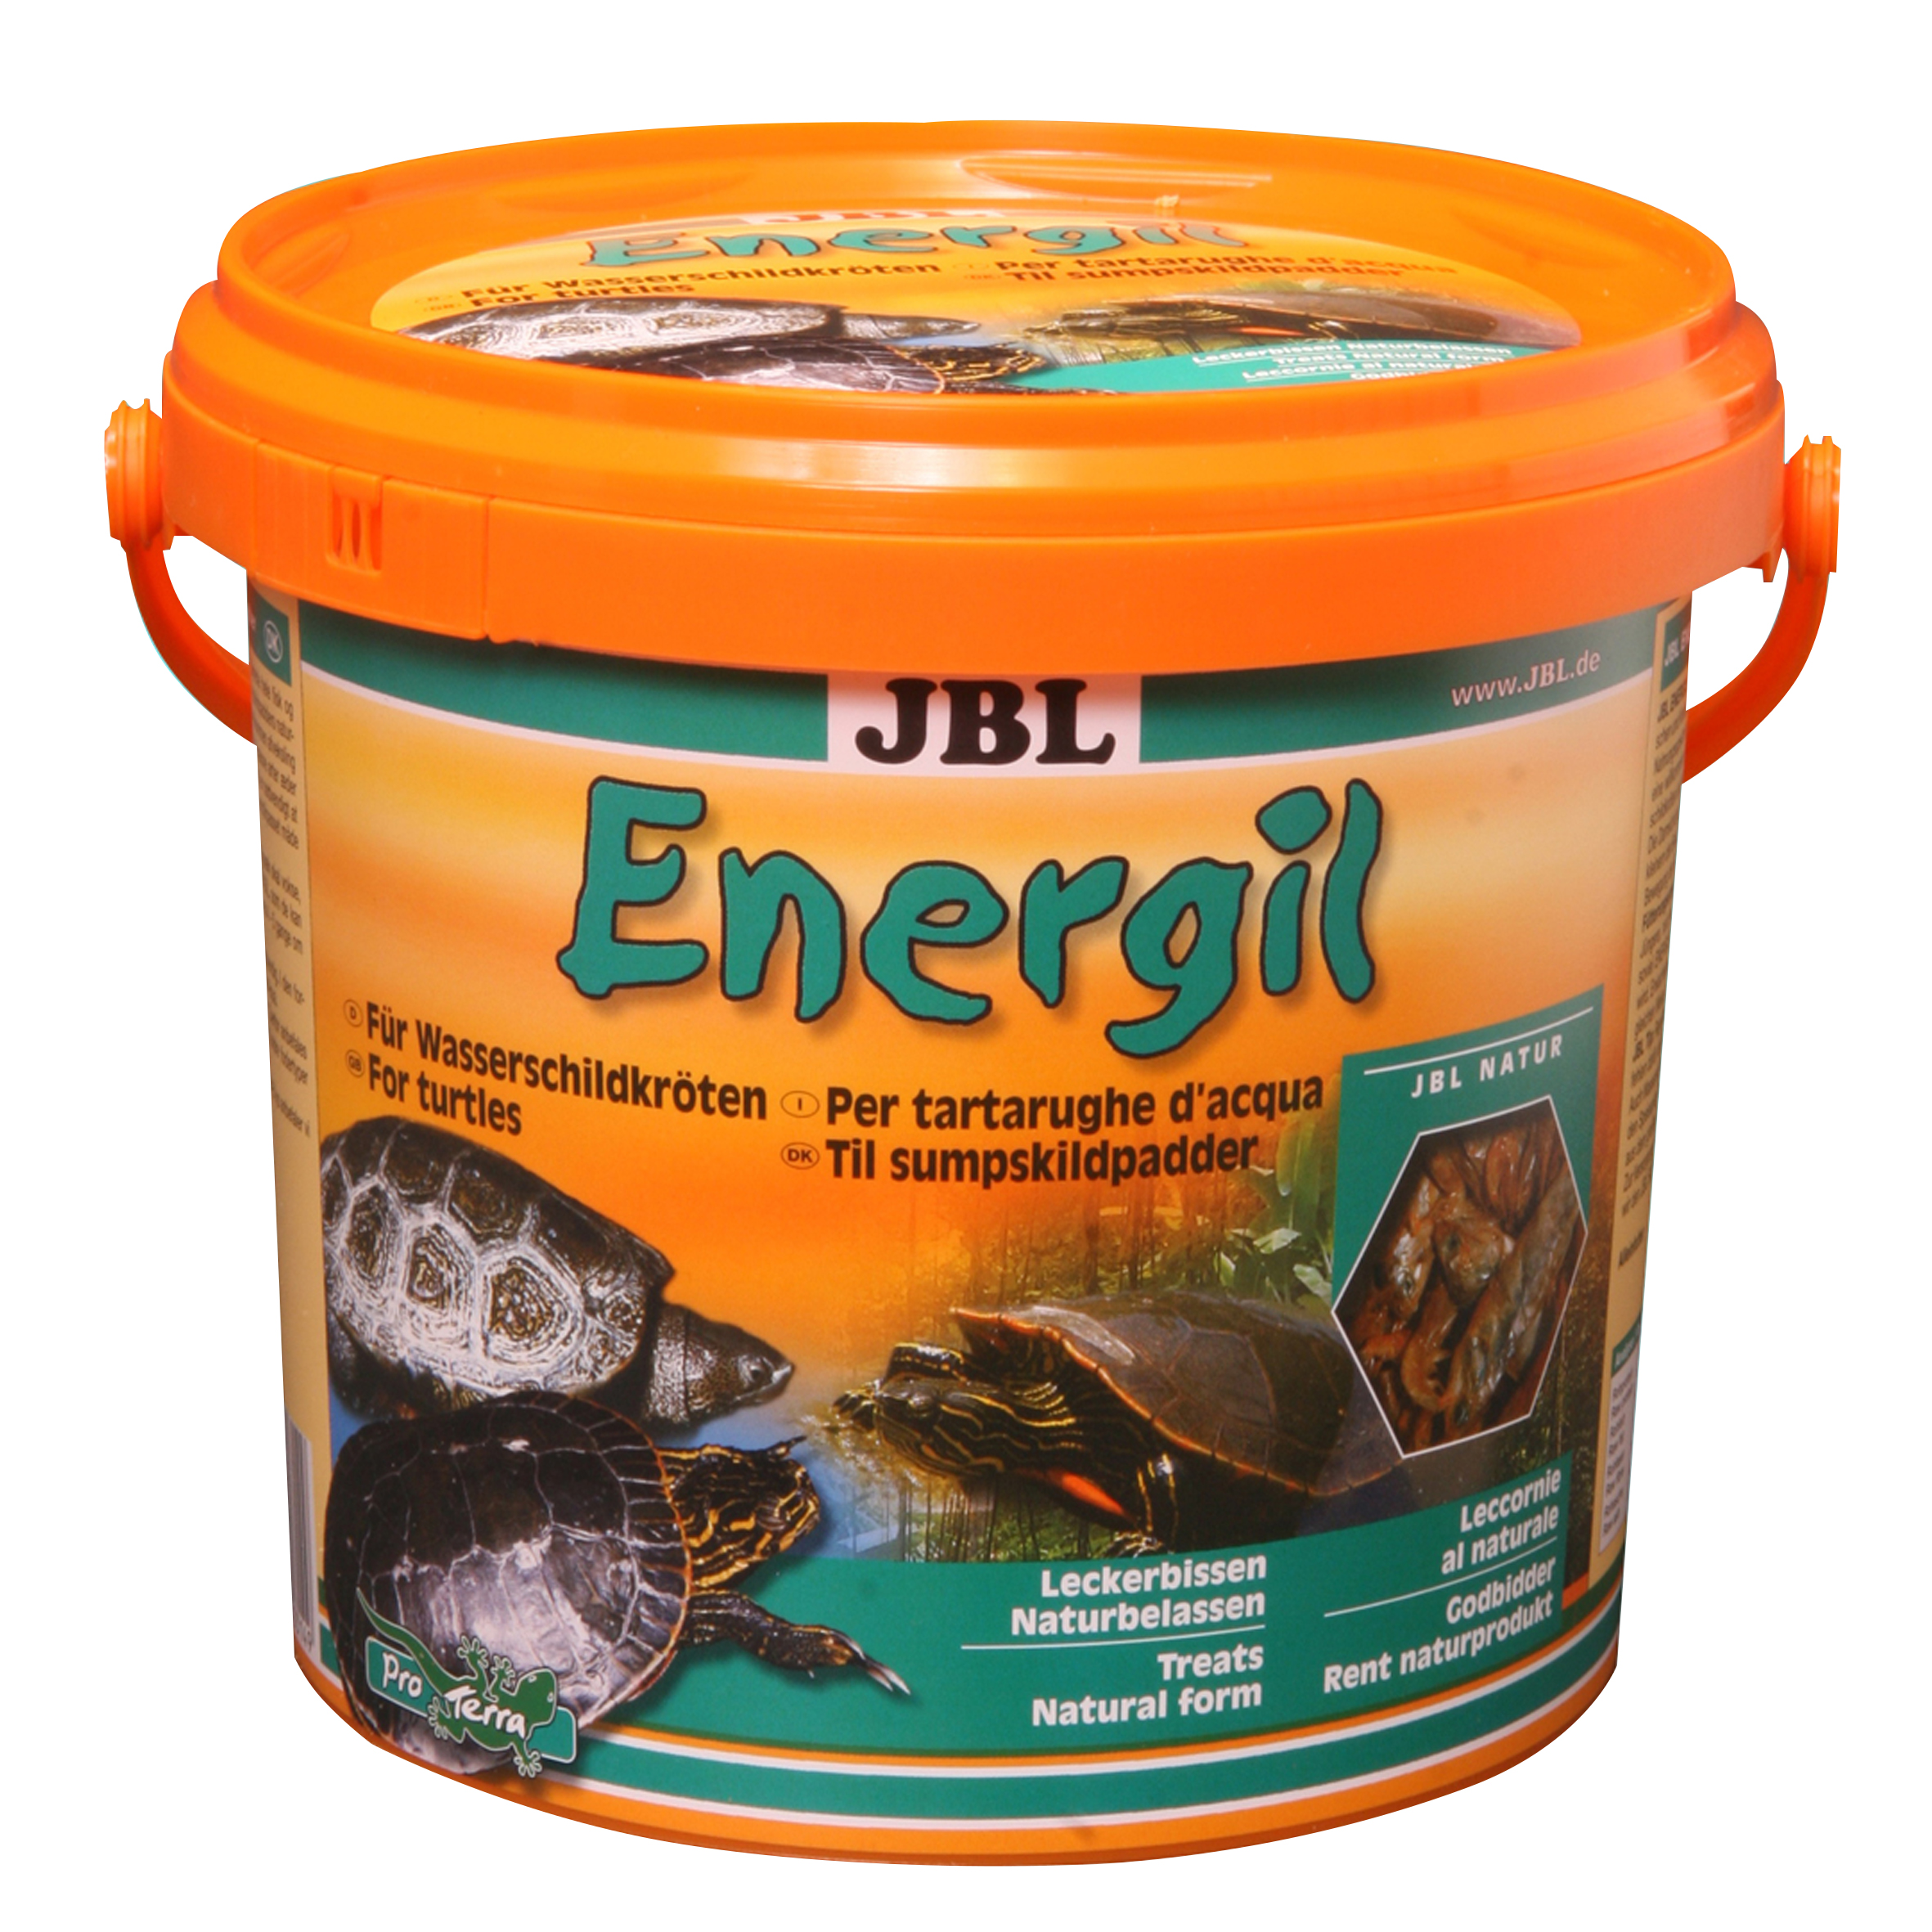 JBL GMBH & CO. KG - NEUHOFEN Energil 2,5l JBL